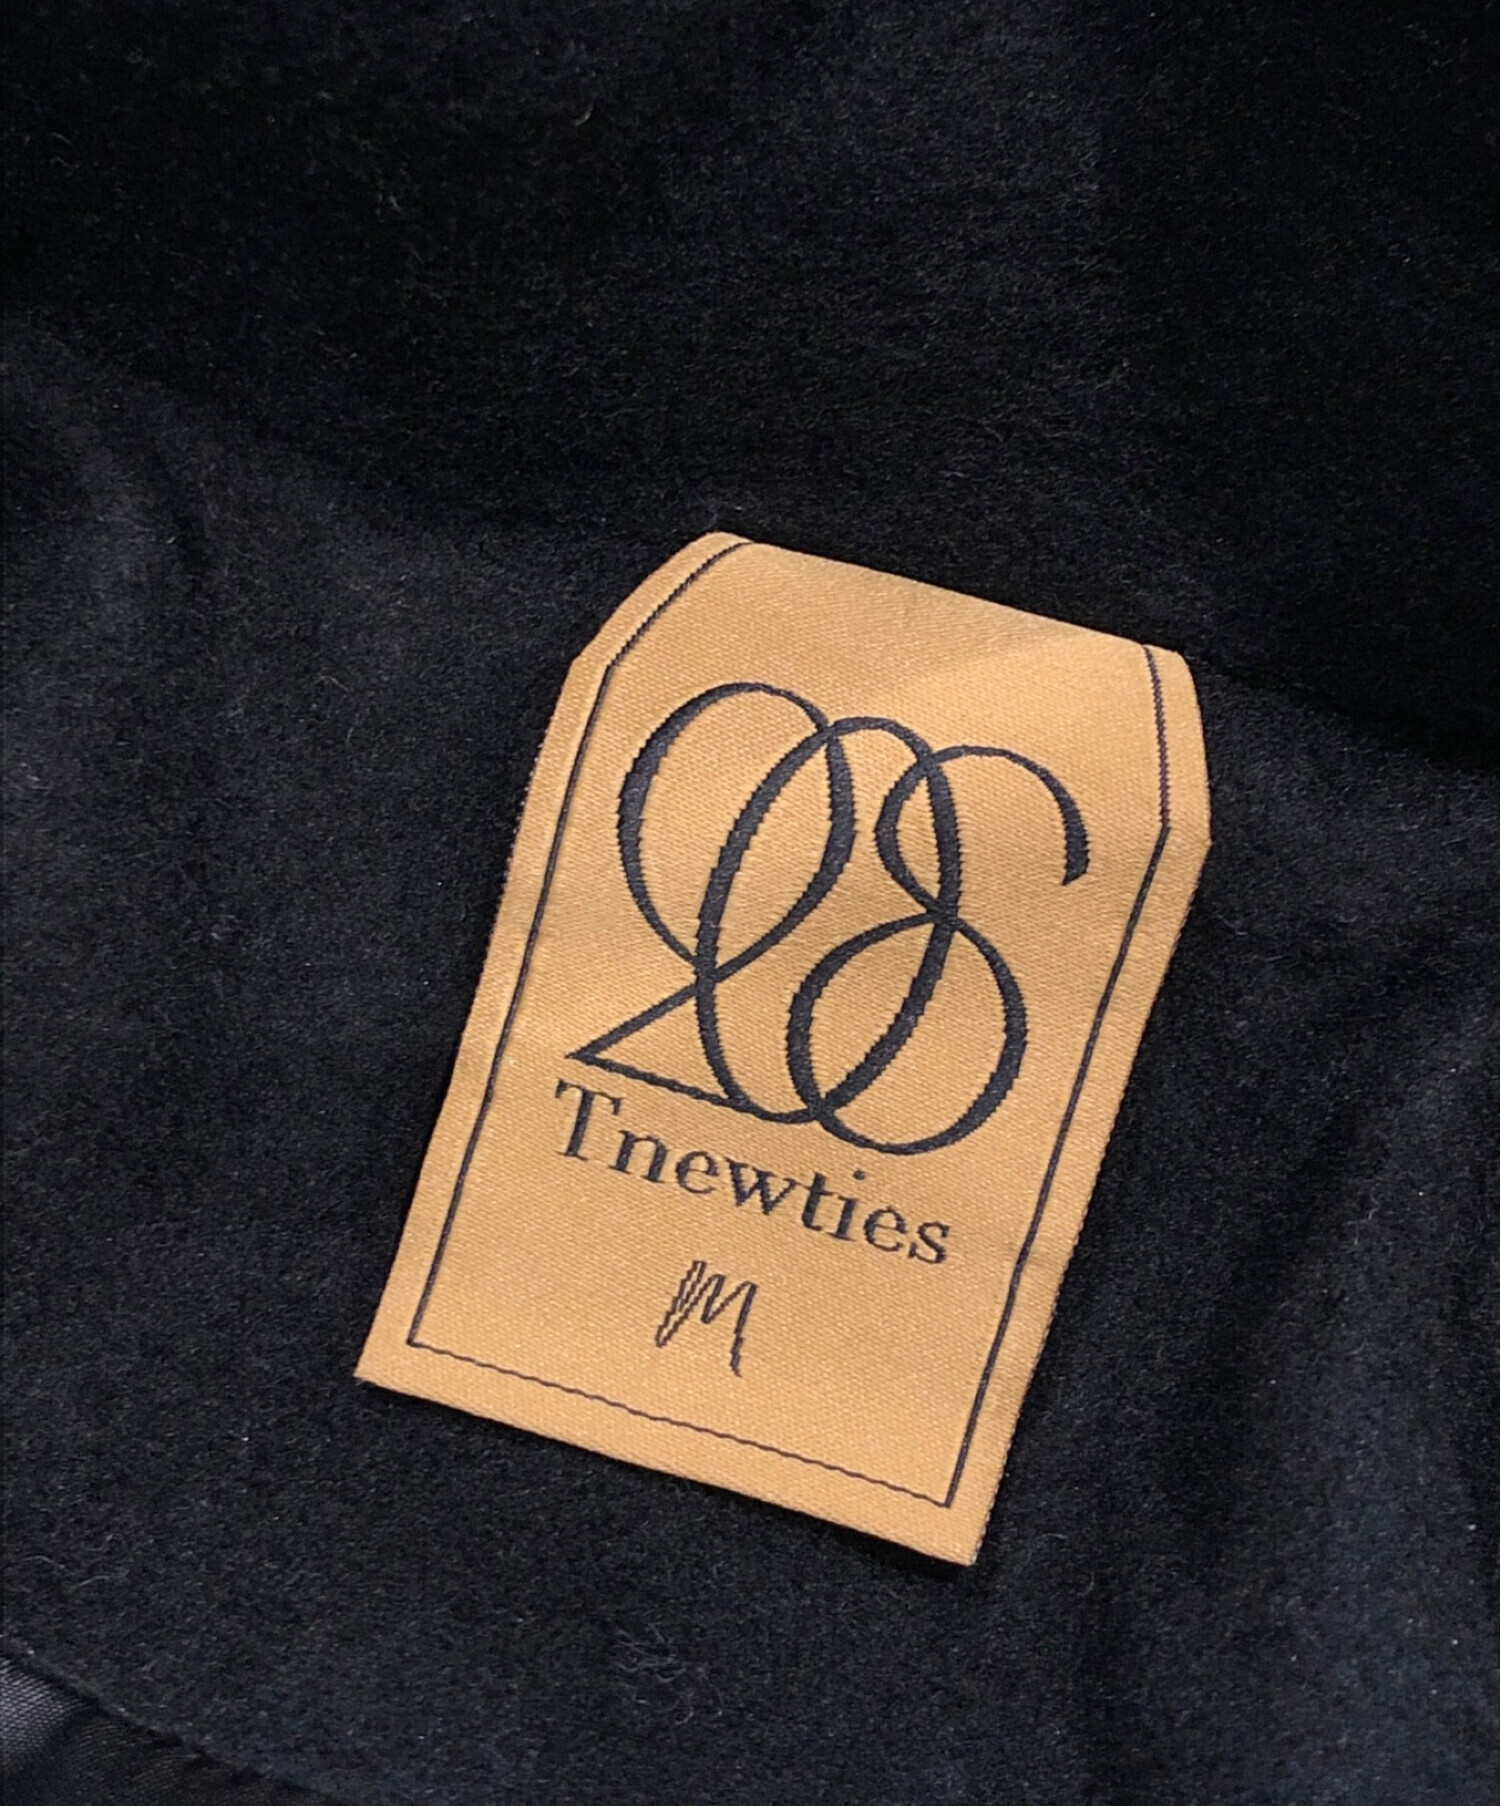 Tnewties (トゥエンティーズ) 「とても重要なミッション」ロングコート ロングコート ブラック サイズ:M